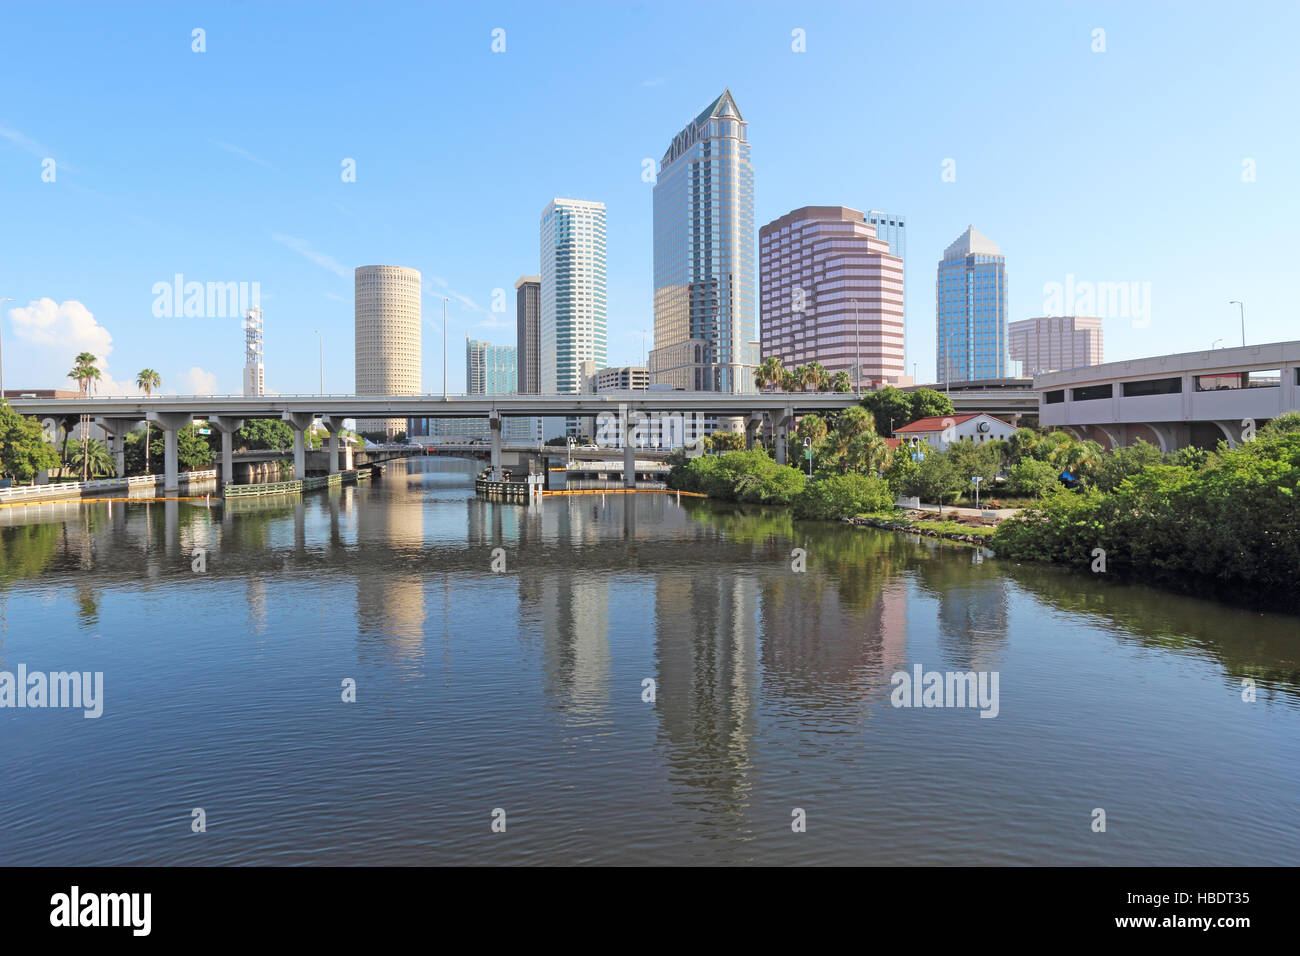 Tampa, Florida horizonte parcial con parque USF y edificios comerciales Foto de stock